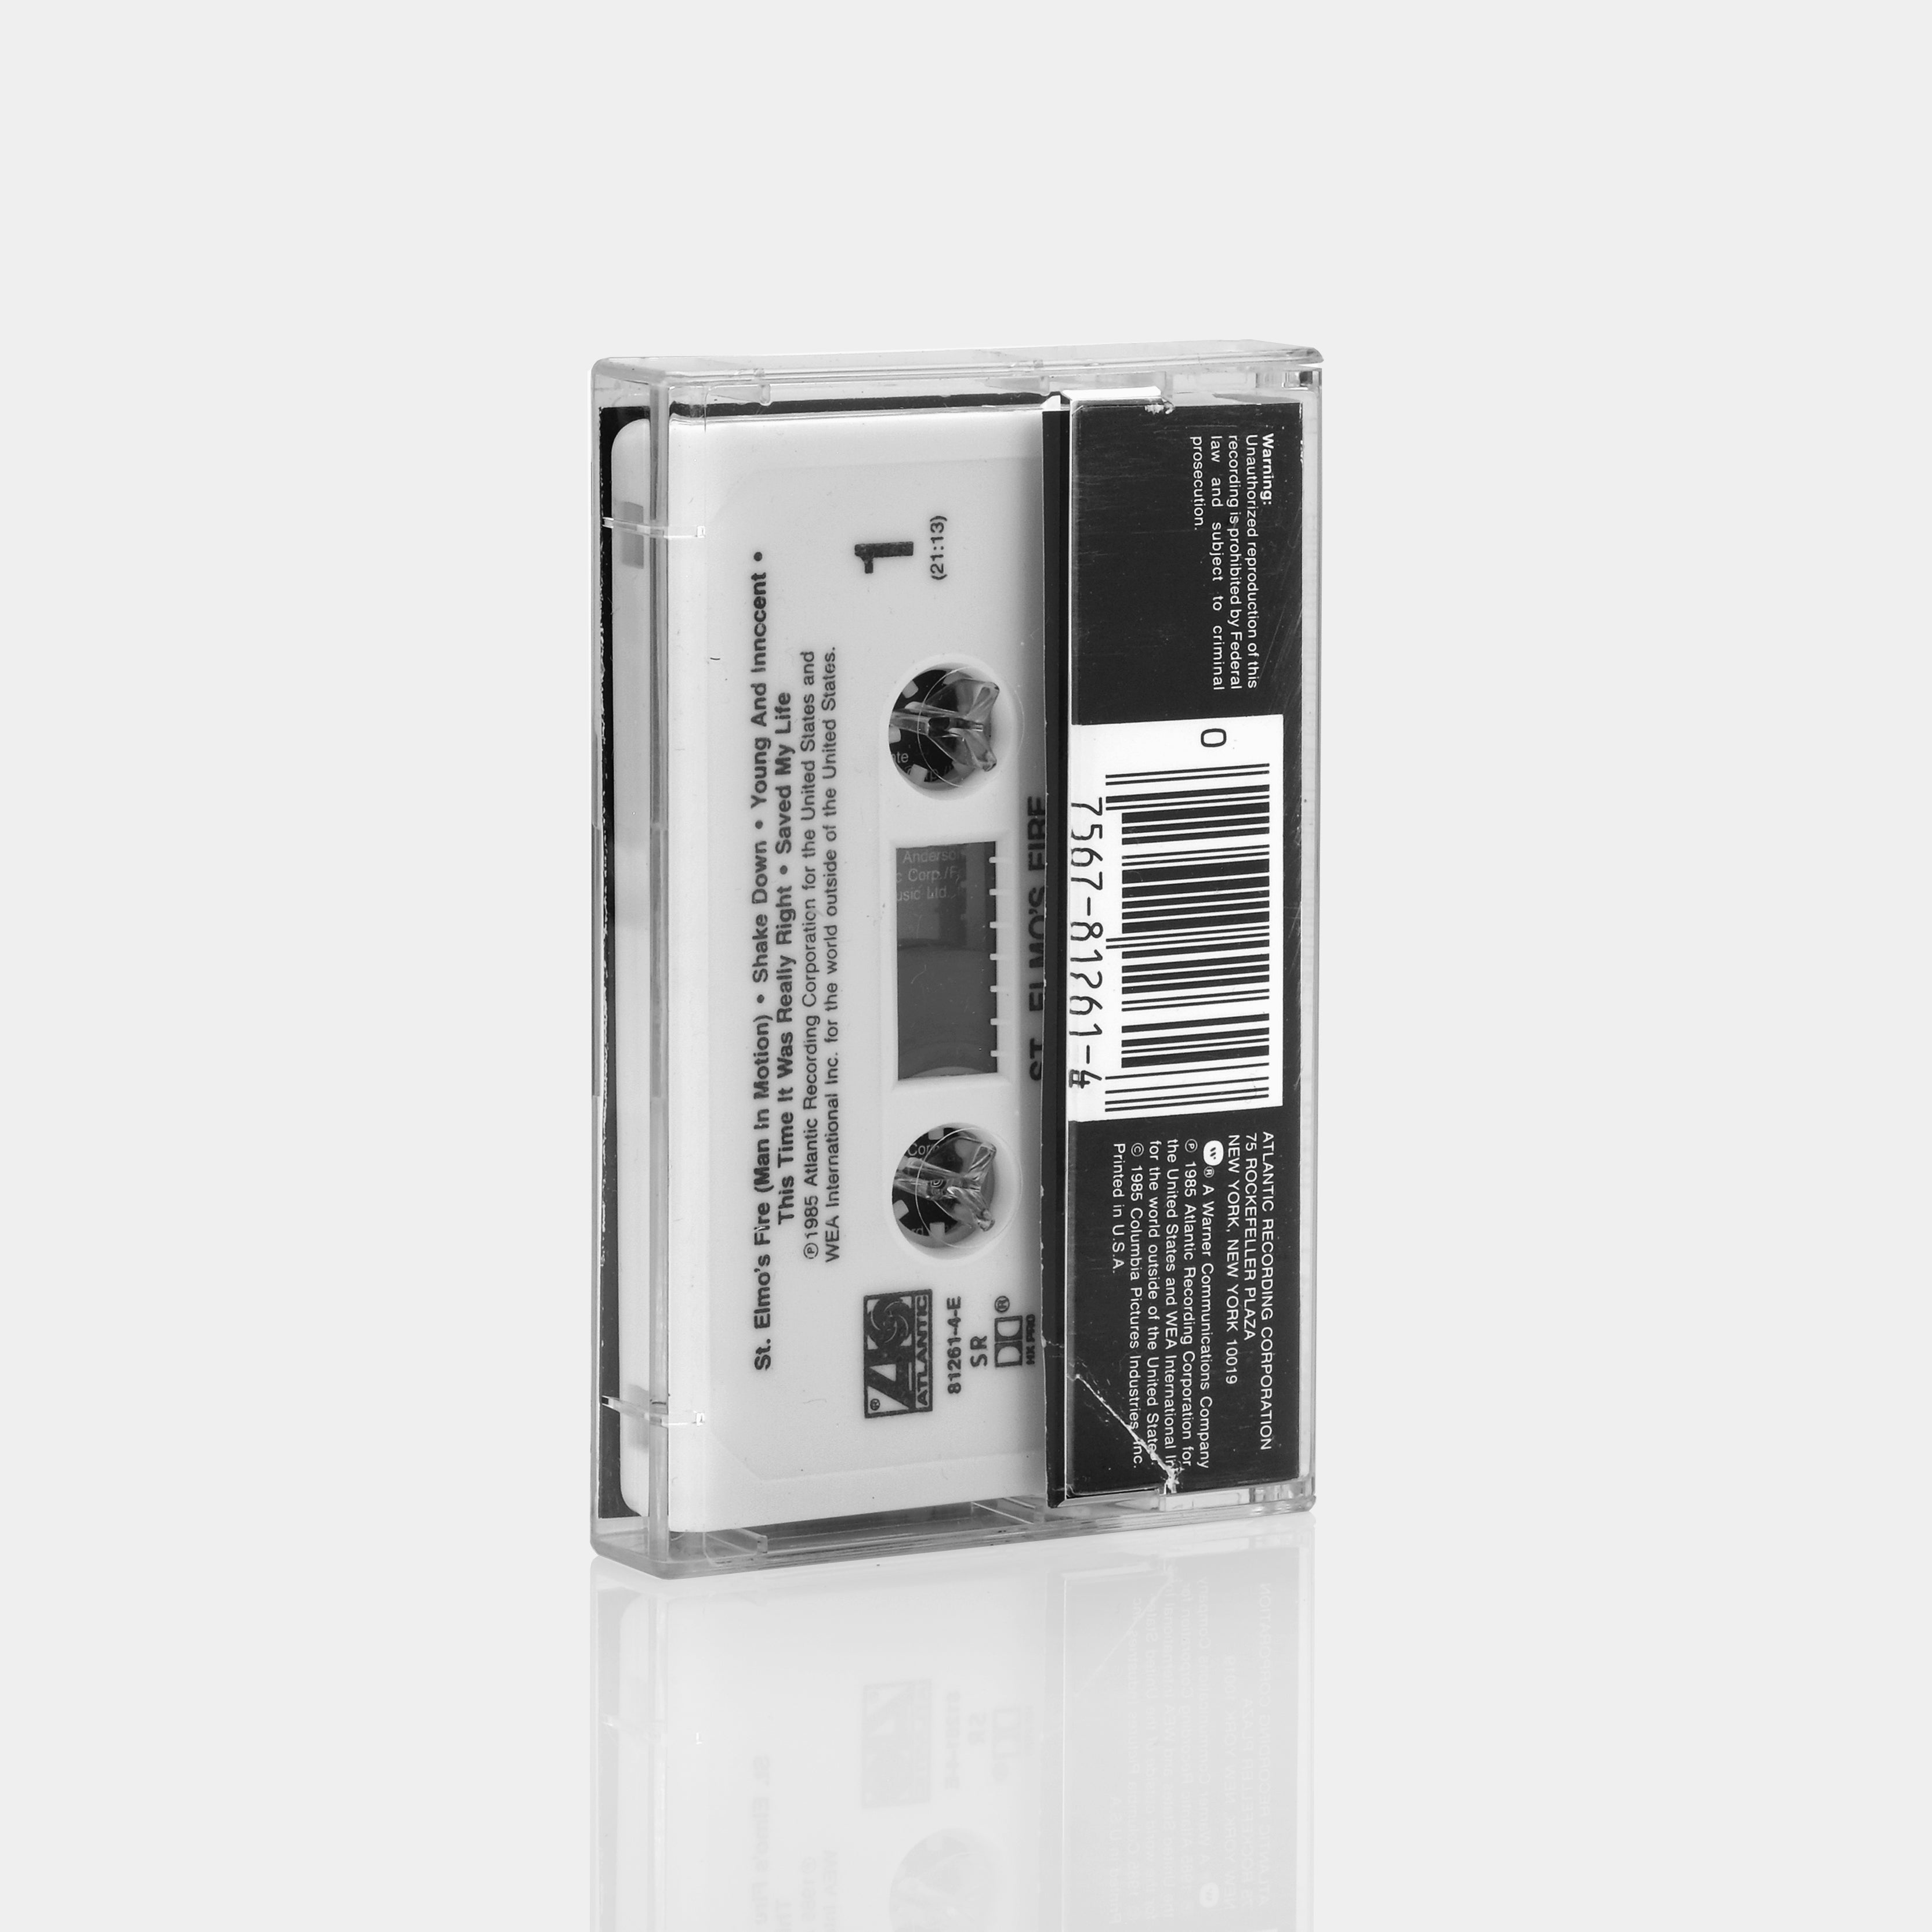 St. Elmo's Fire (Original Motion Picture Soundtrack) Cassette Tape